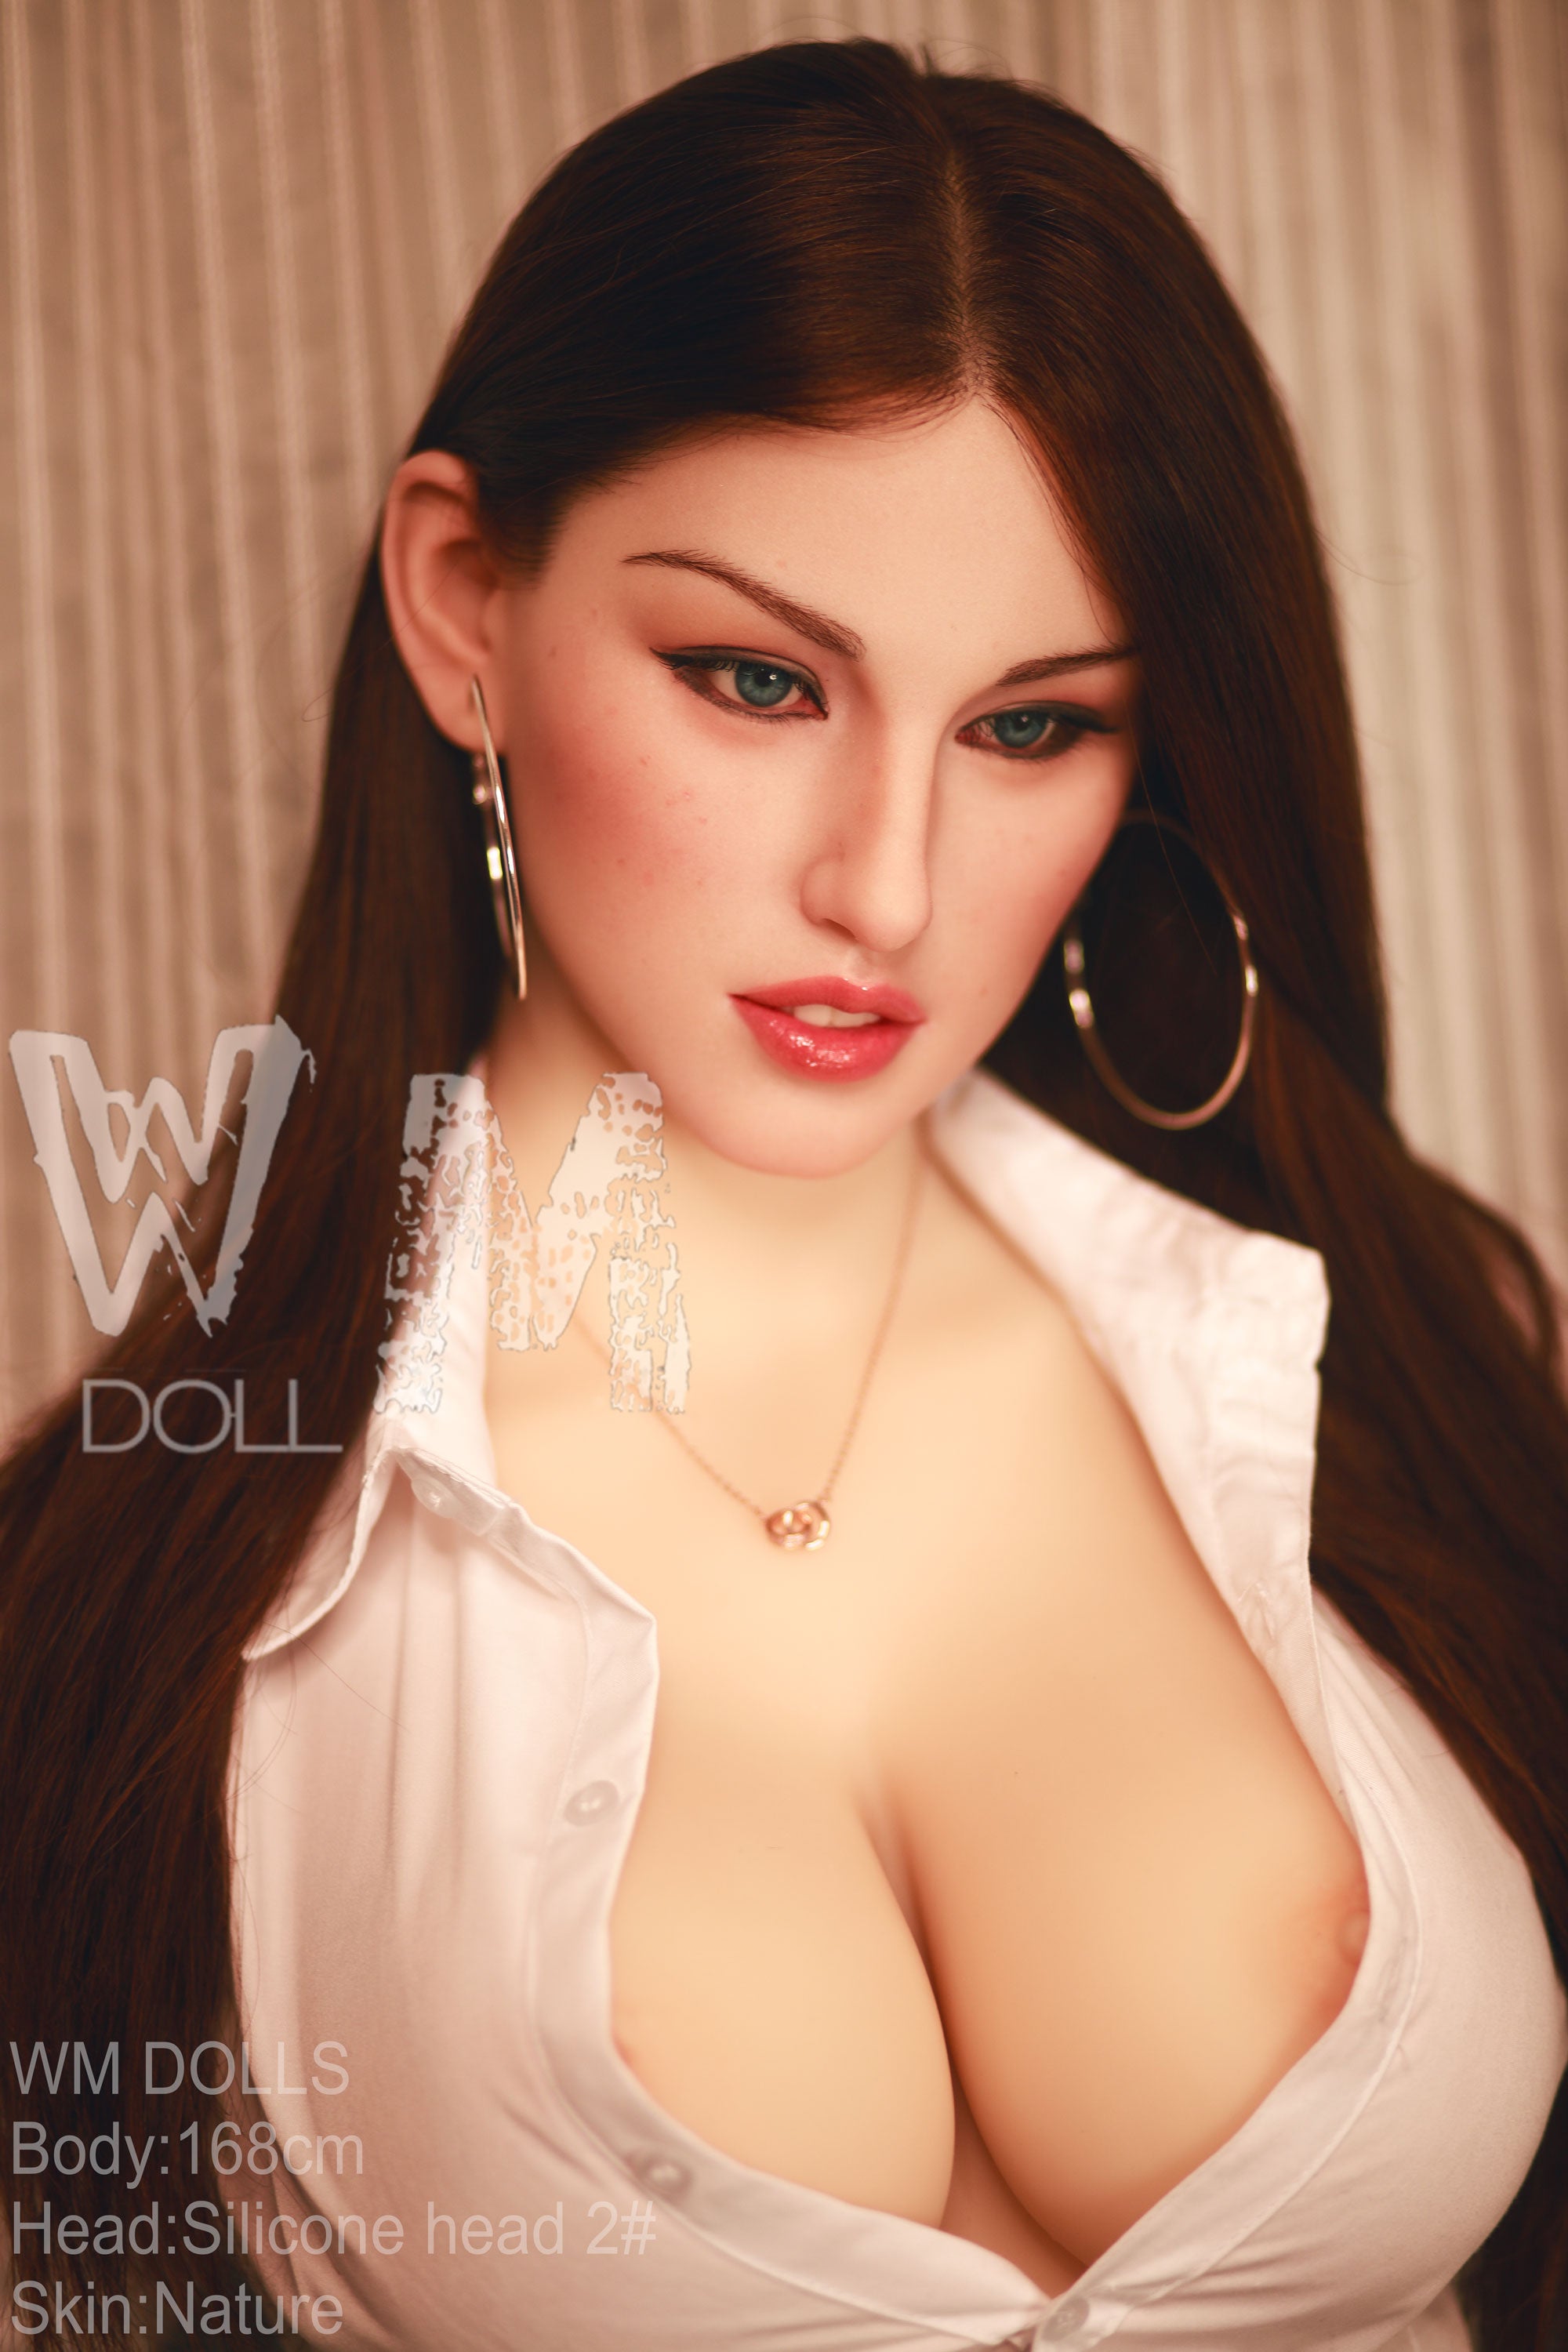 WM Doll 168cm E cup Hybrid - Cherry-SexDollBabe